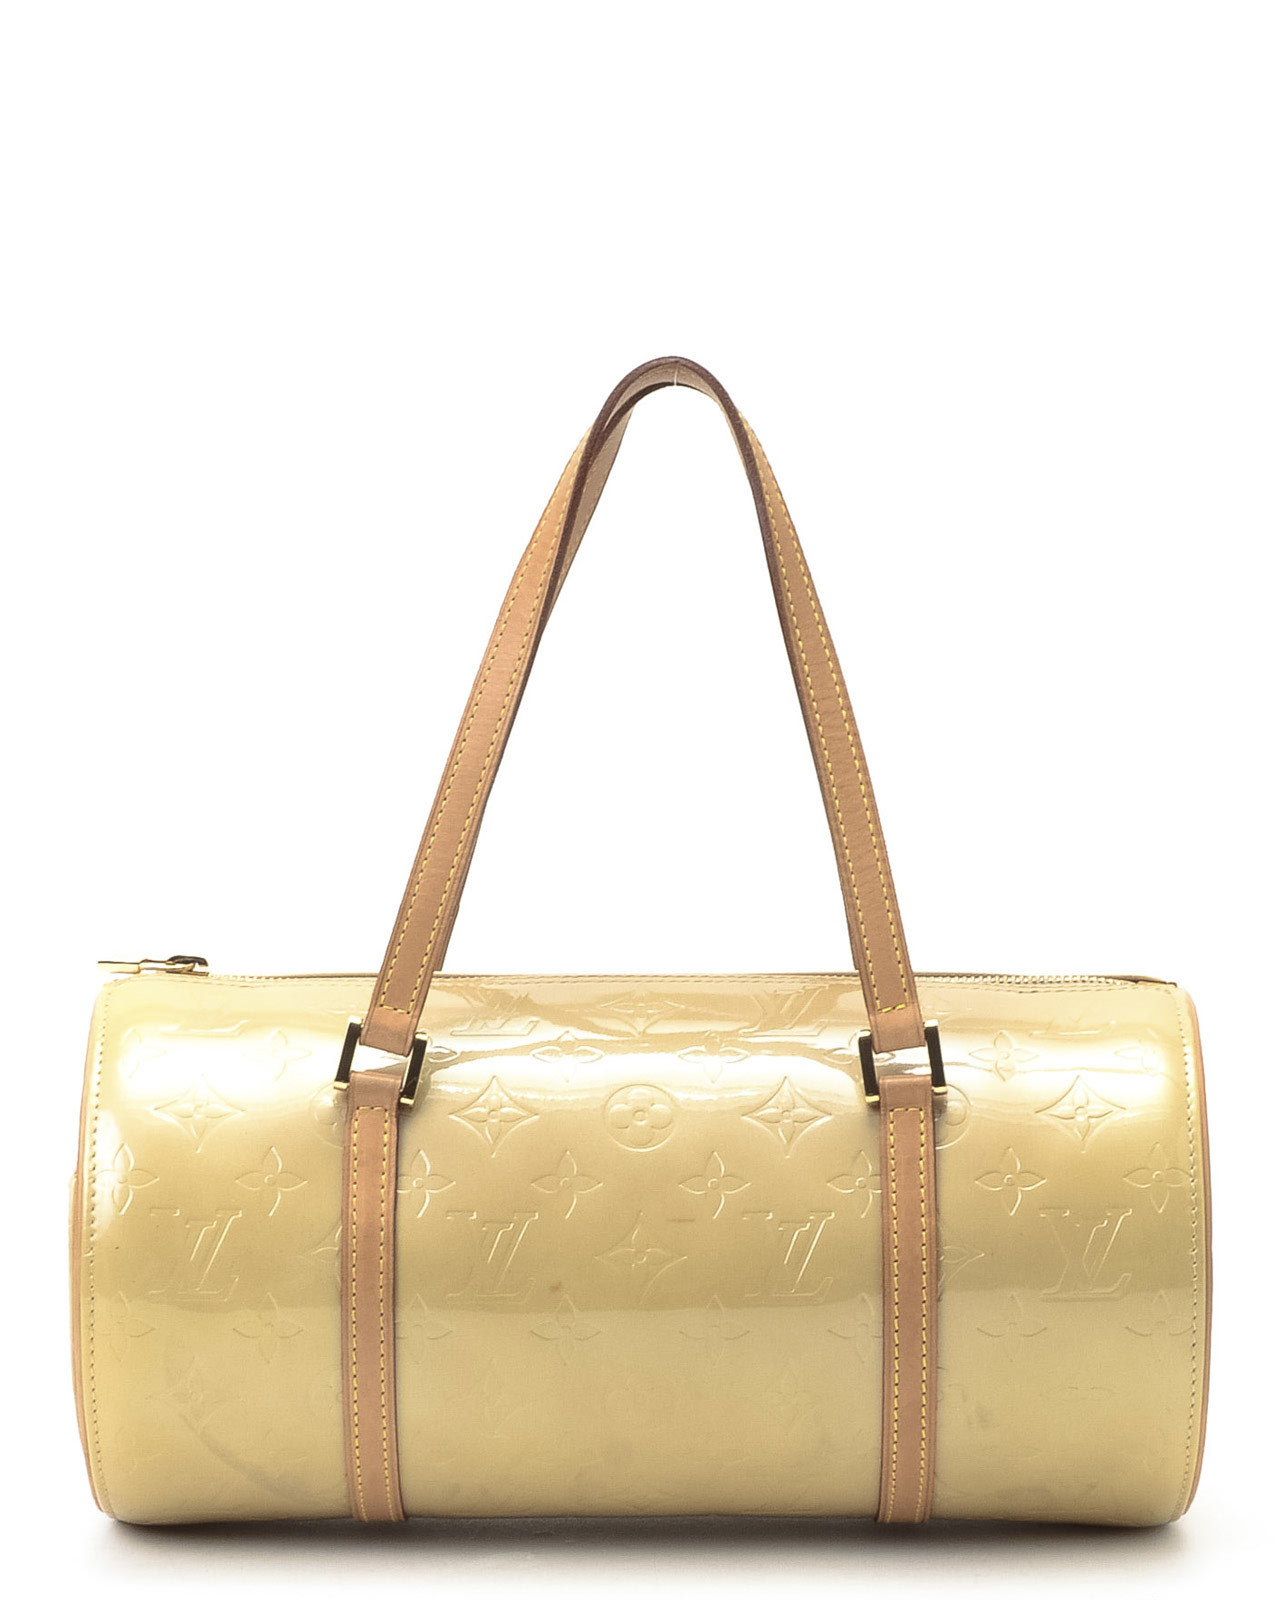 Lyst - Louis Vuitton Barrel Handbag in Metallic